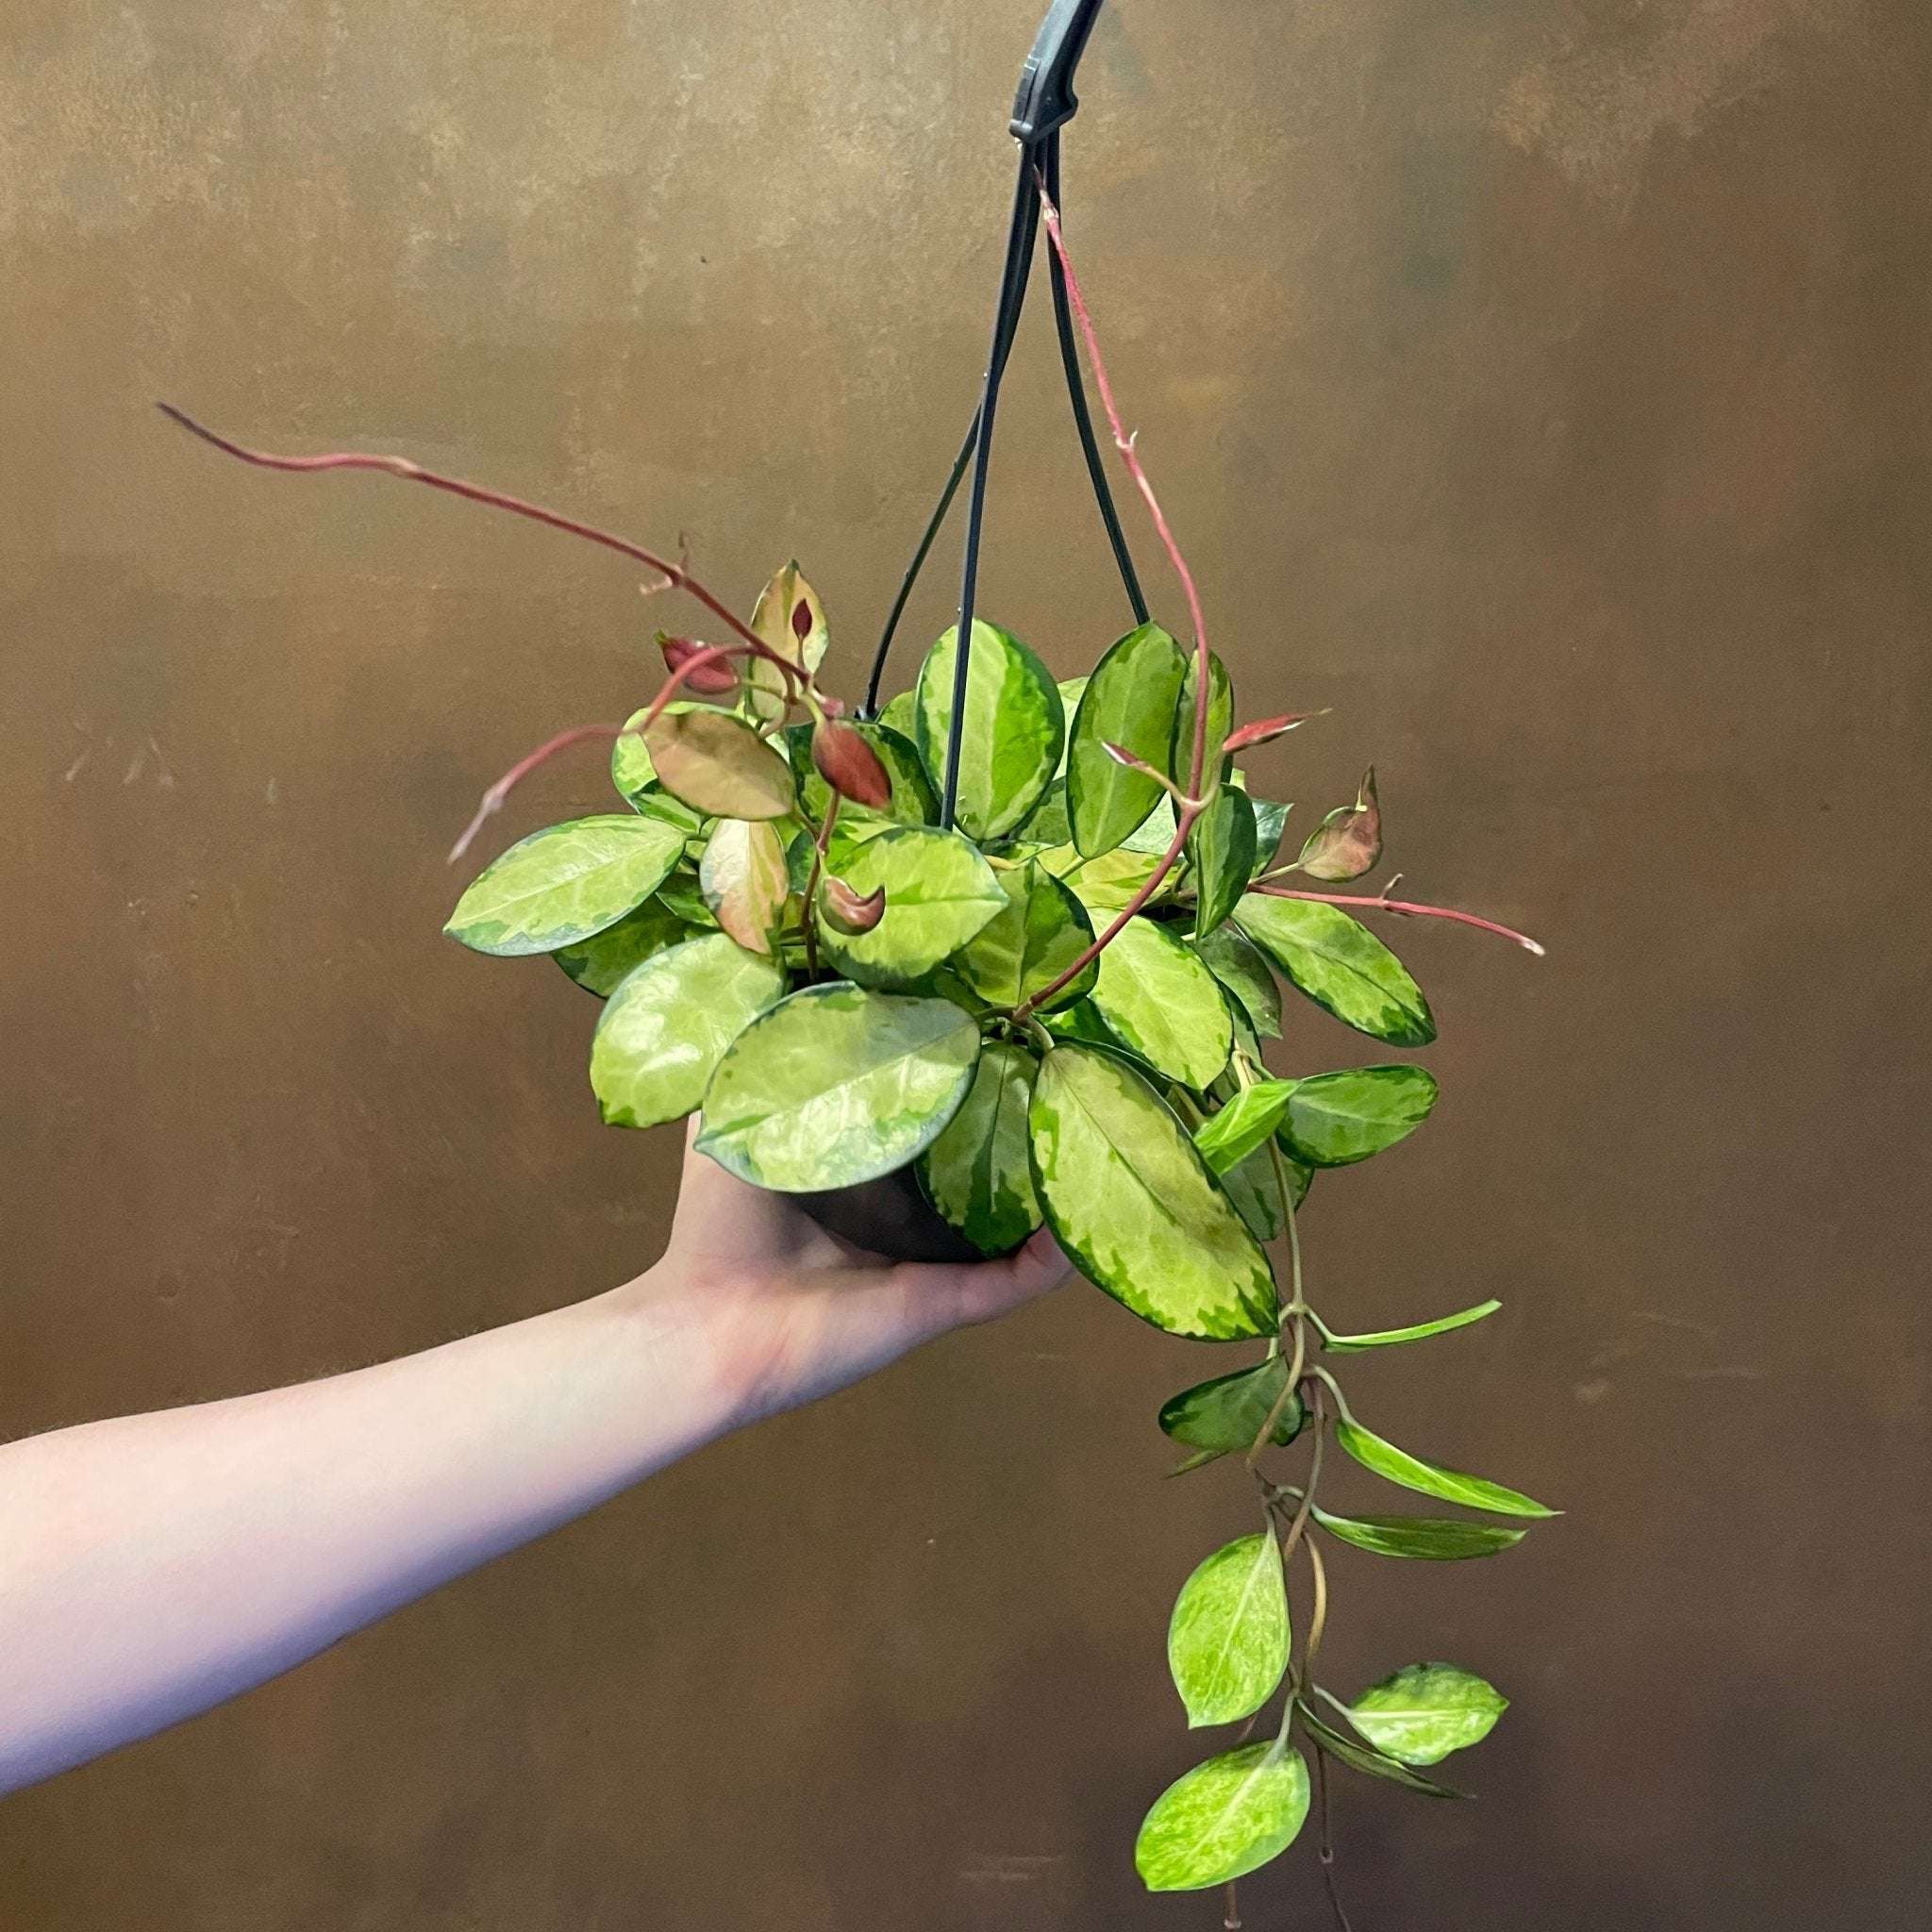 Hoya australis ‘Lisa’ (hangpot) - grow urban. UK